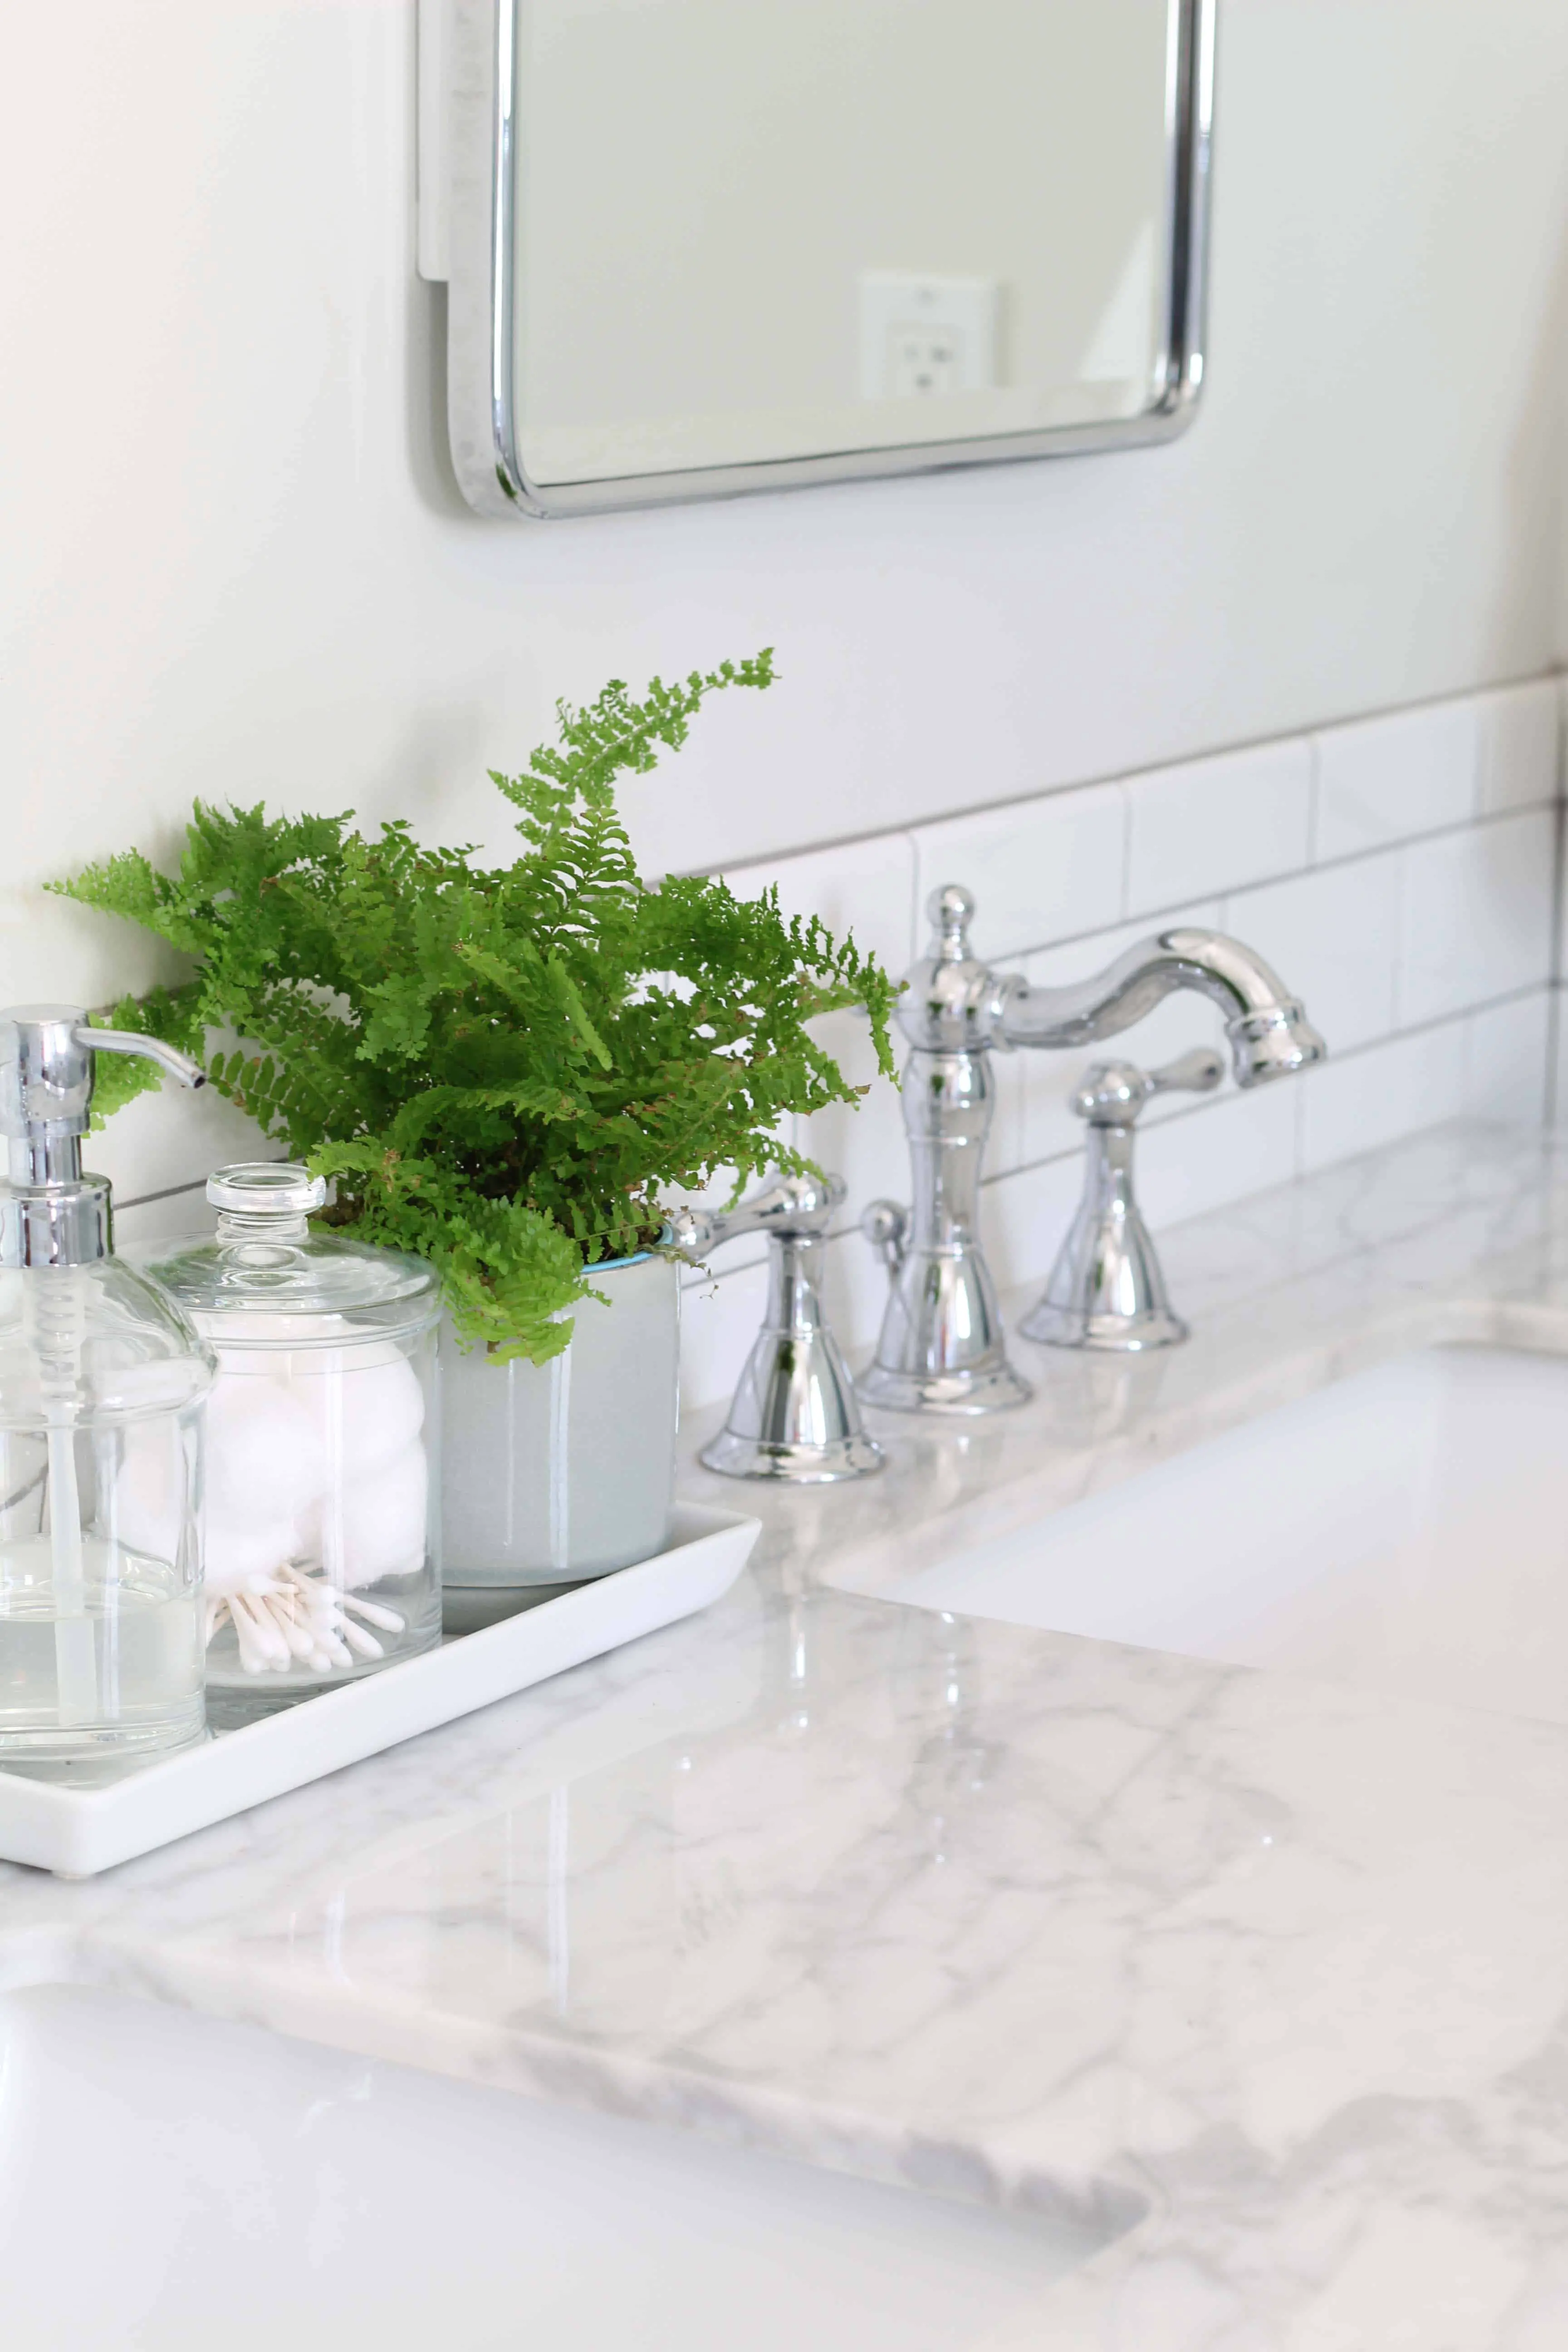 marble bathroom vanity, fern, vintage faucet